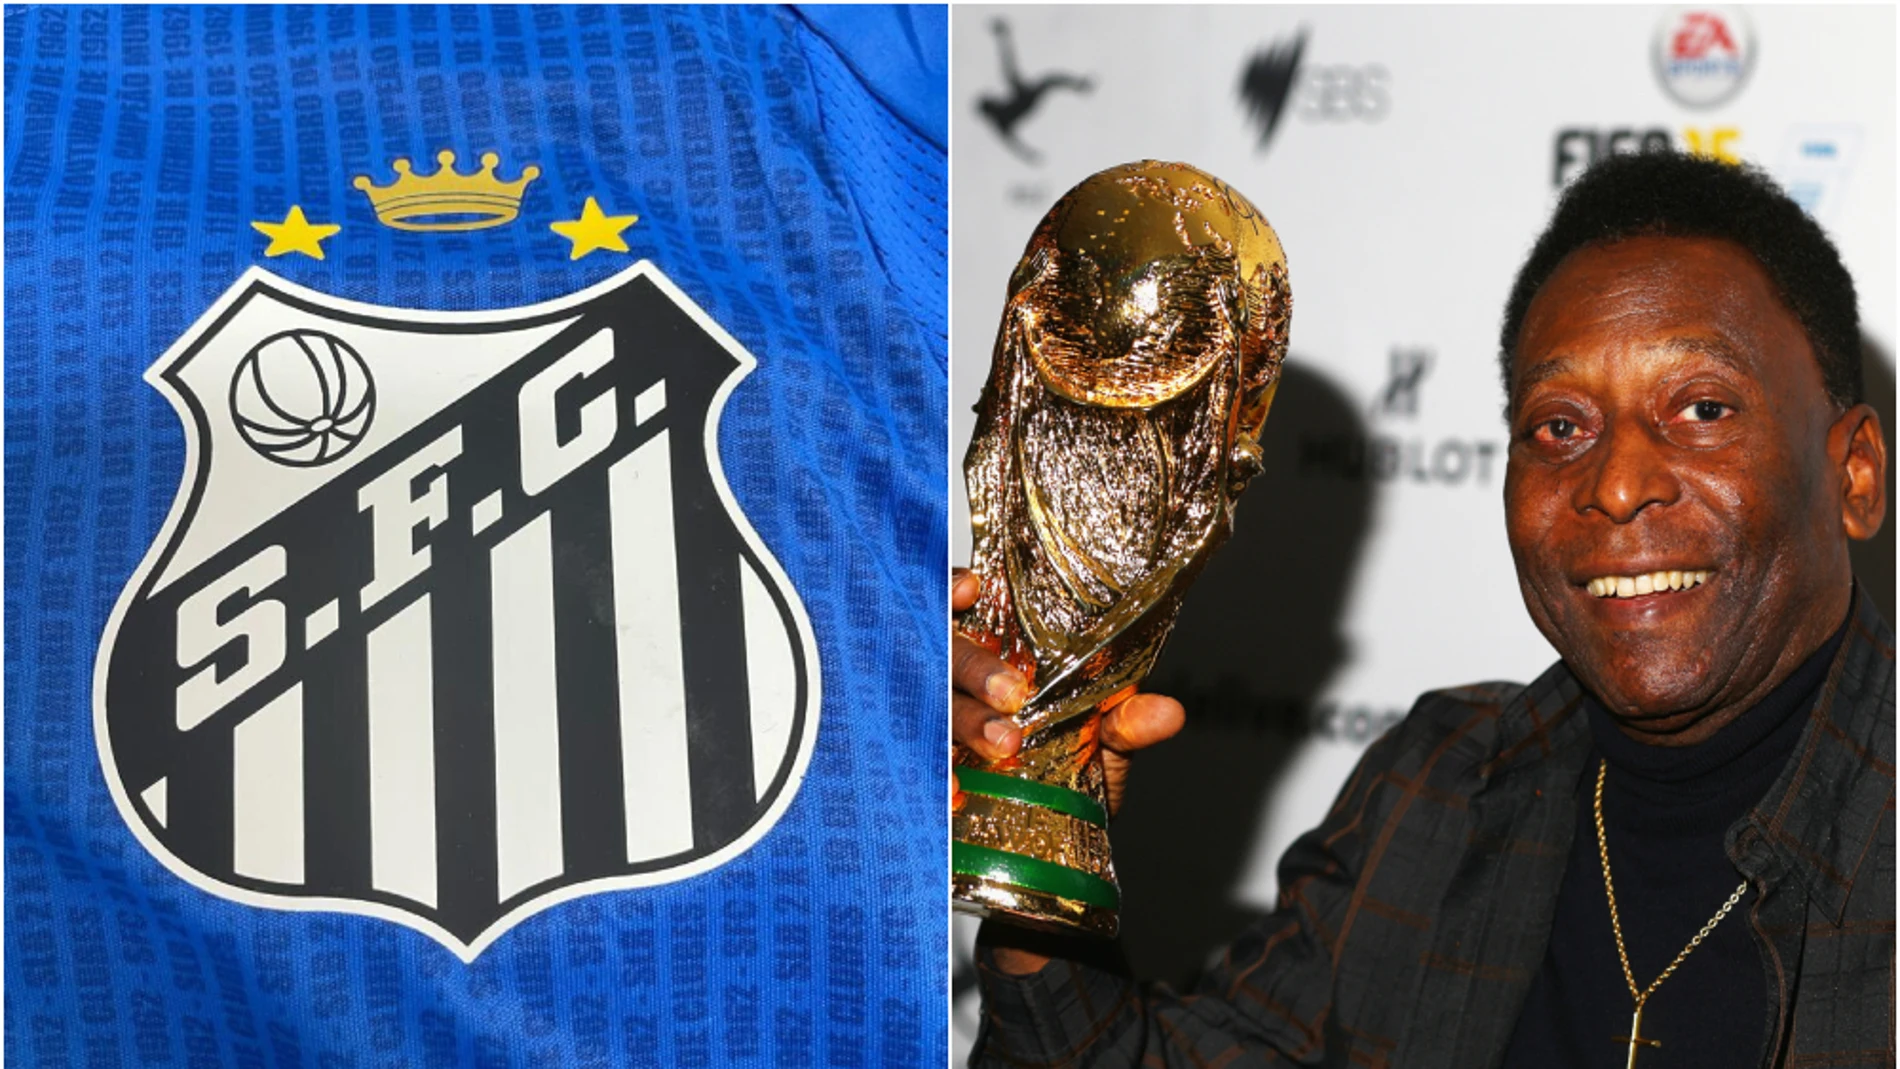 El Santos cambia su escudo en honor a Pelé